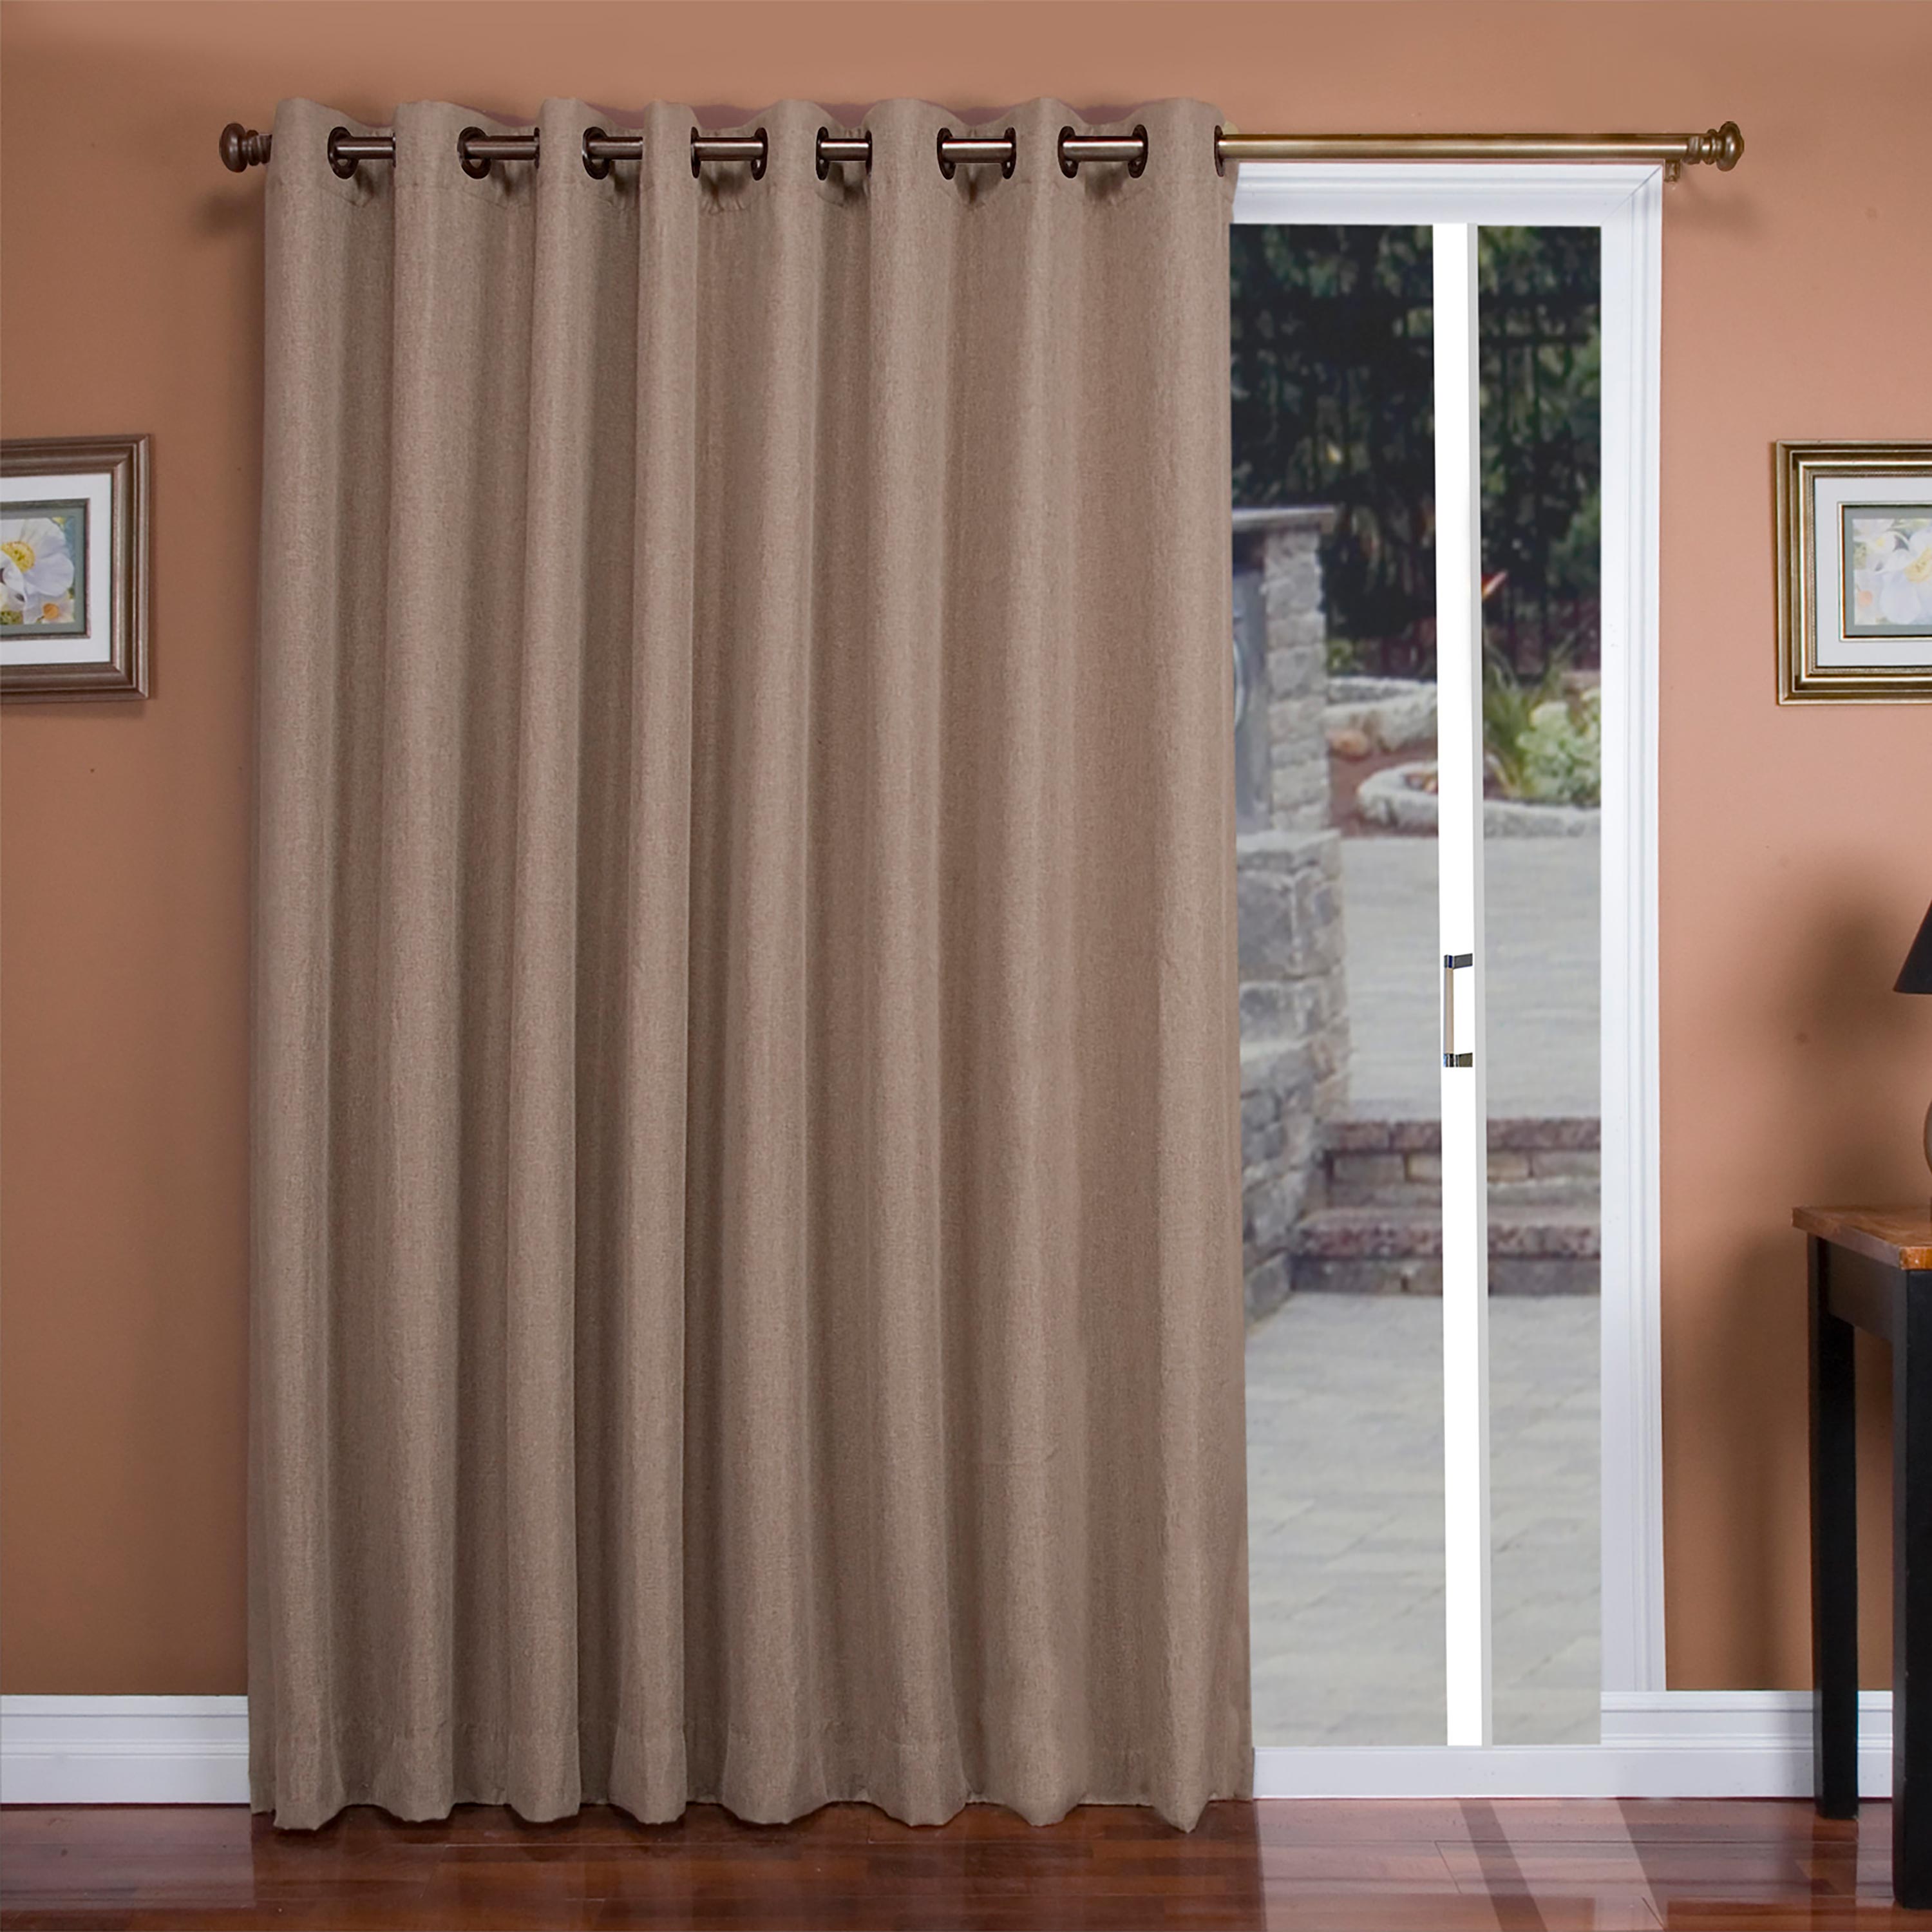 Madison Double-Blackout Grommet Curtain Pair, 40"W x 96"L per panel